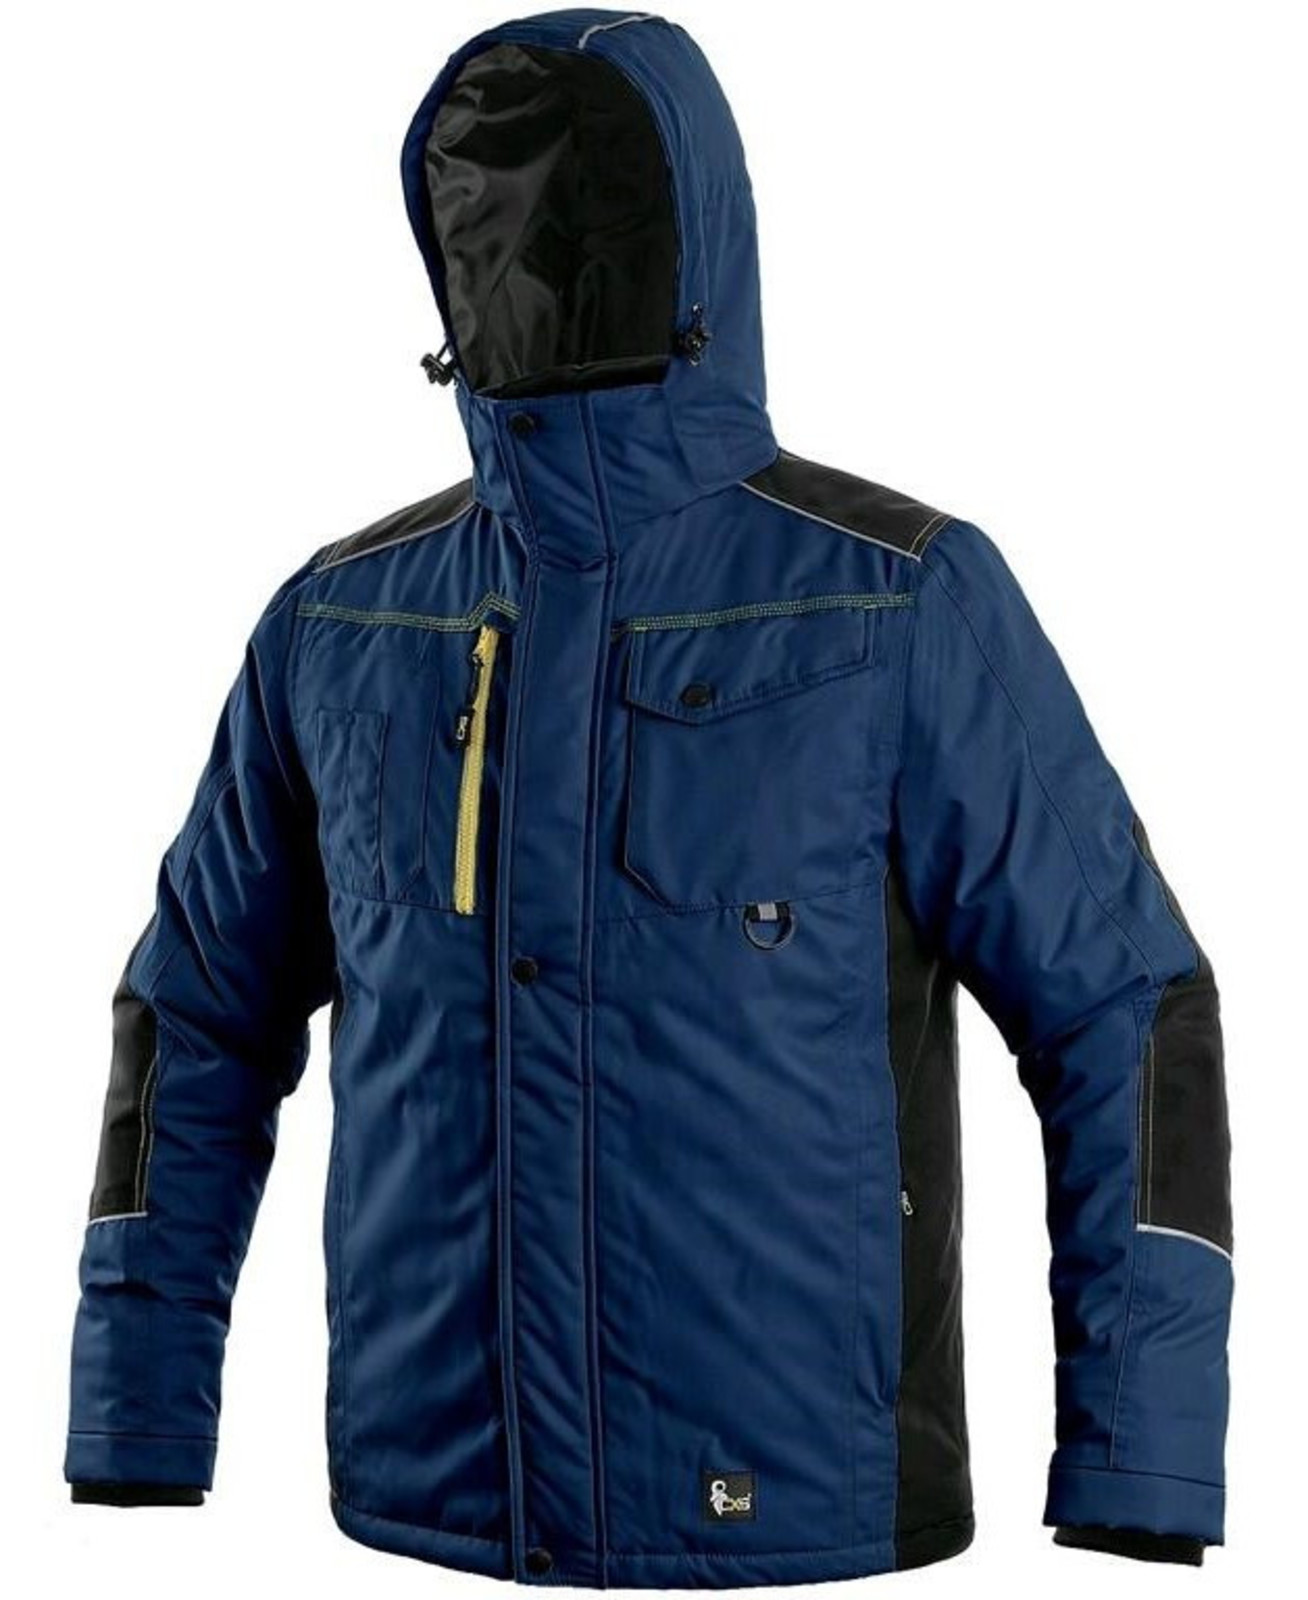 Zimná pracovná bunda CXS Baltimore - veľkosť: L, farba: tmavá modrá/čierna